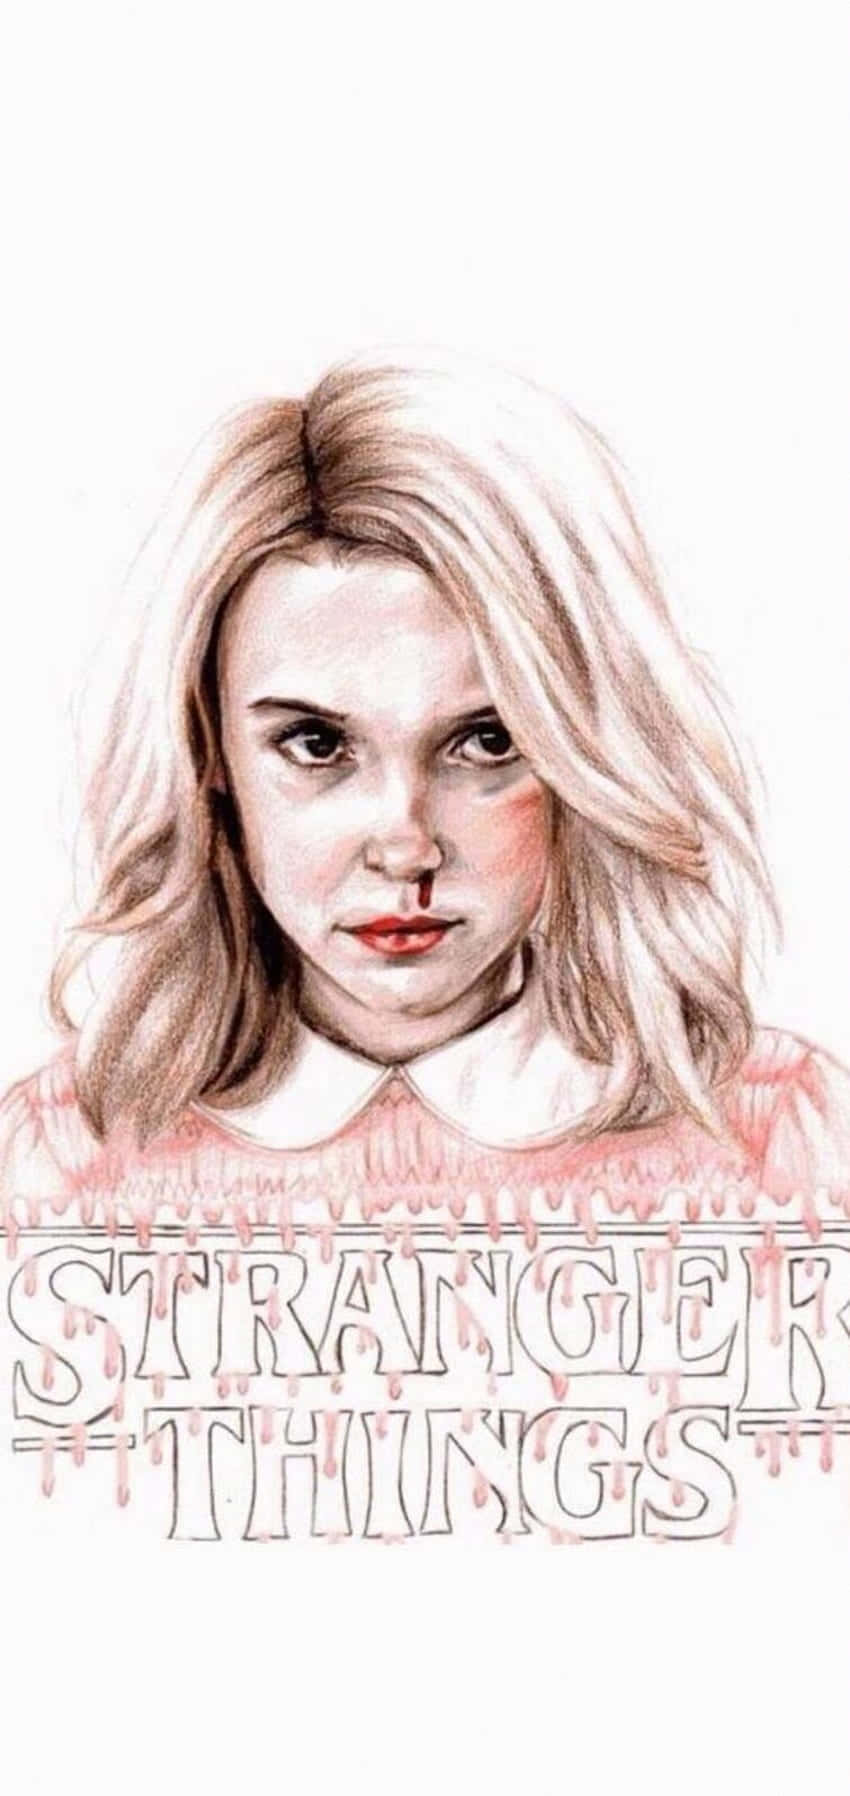 Stranger Things Girly Eleven Wallpaper